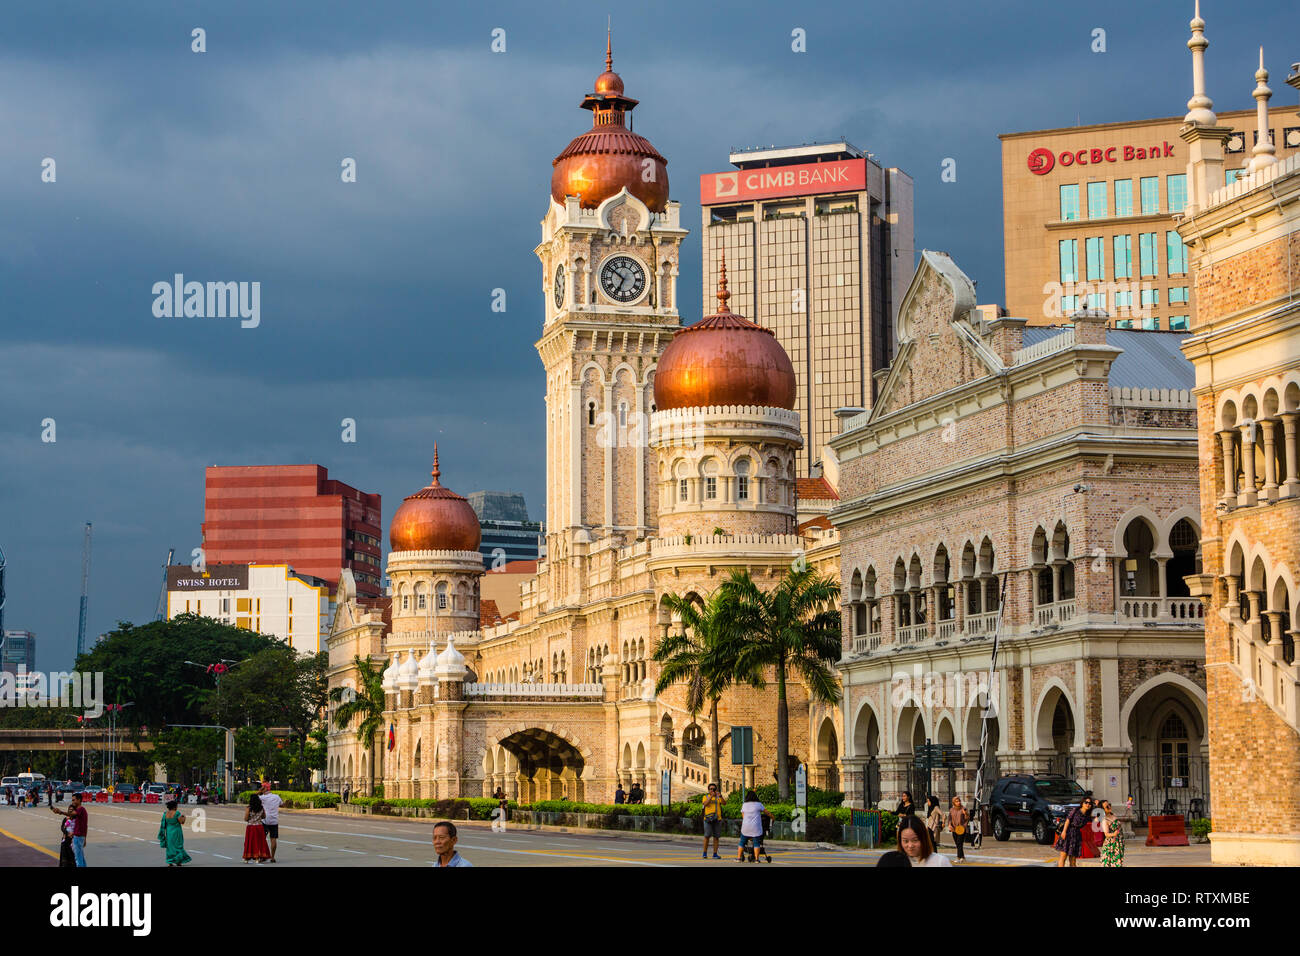 L'architecture mauresque. Sultan Abdul Samad Building, ancien siège de l'administration coloniale britannique. Kuala Lumpur, Malaisie. Banque D'Images